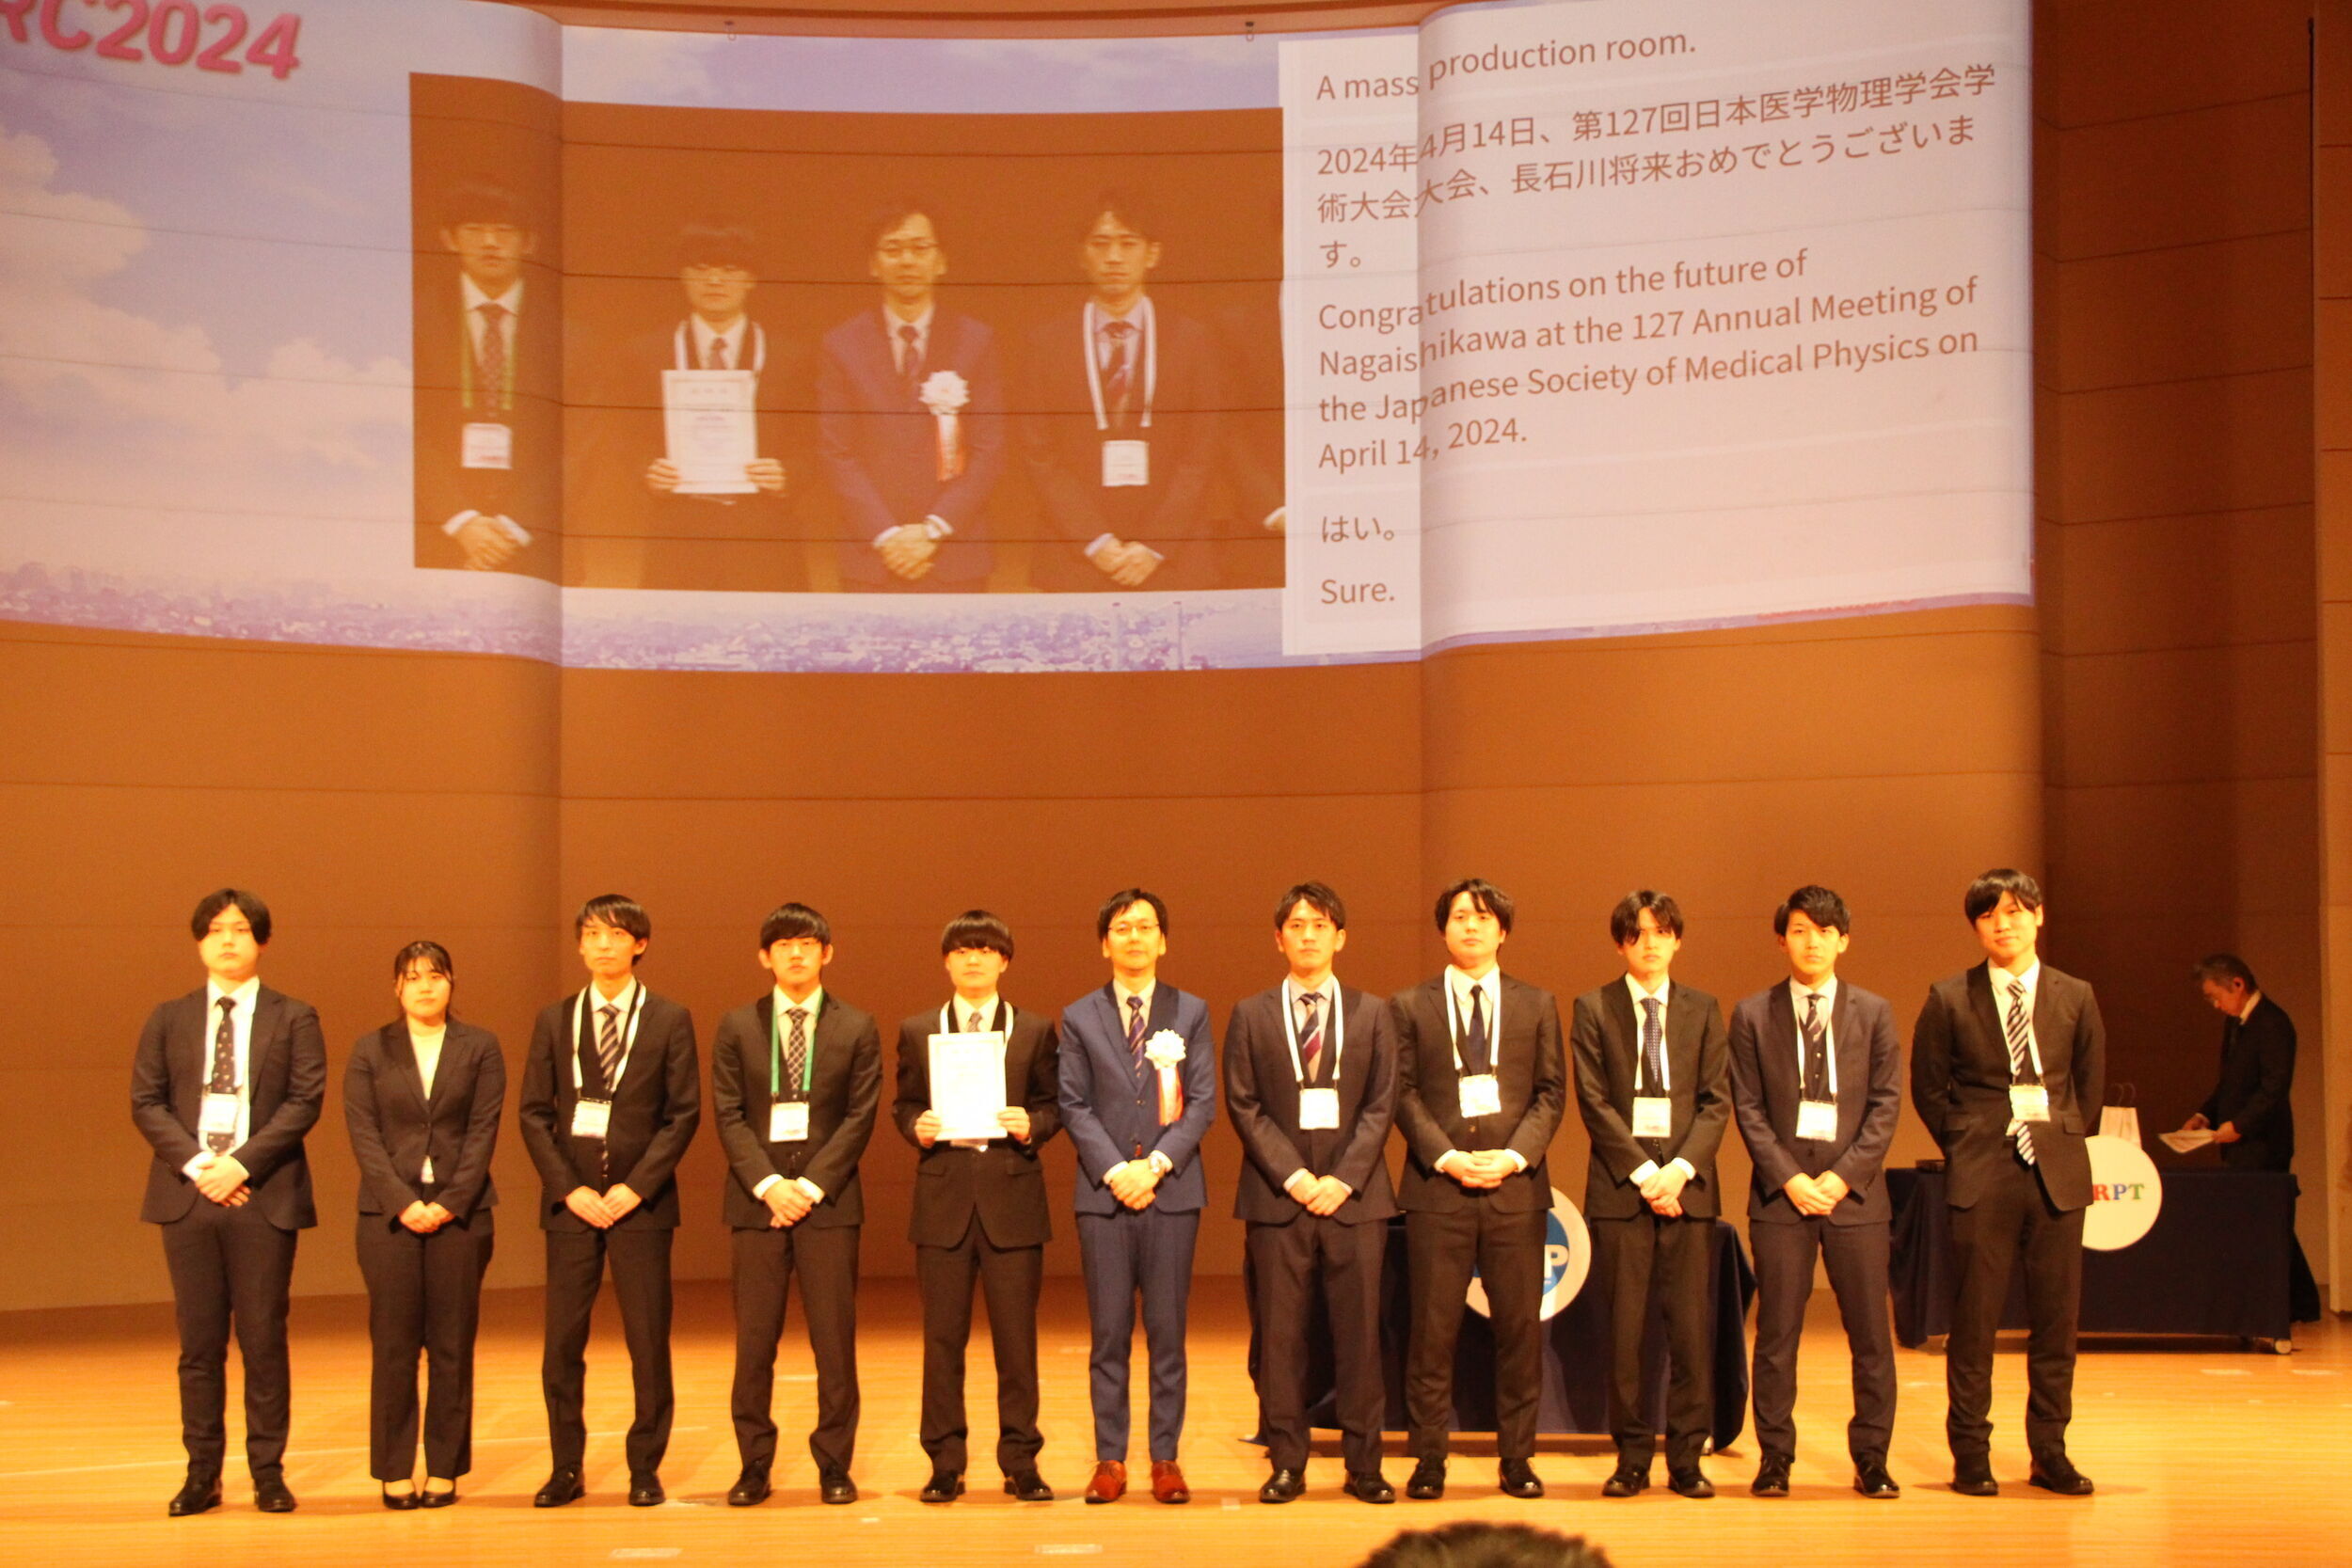 共同研究施設の東北大学：第127回日本医学物理学会学術大会において、3名が学生奨励賞を受賞！